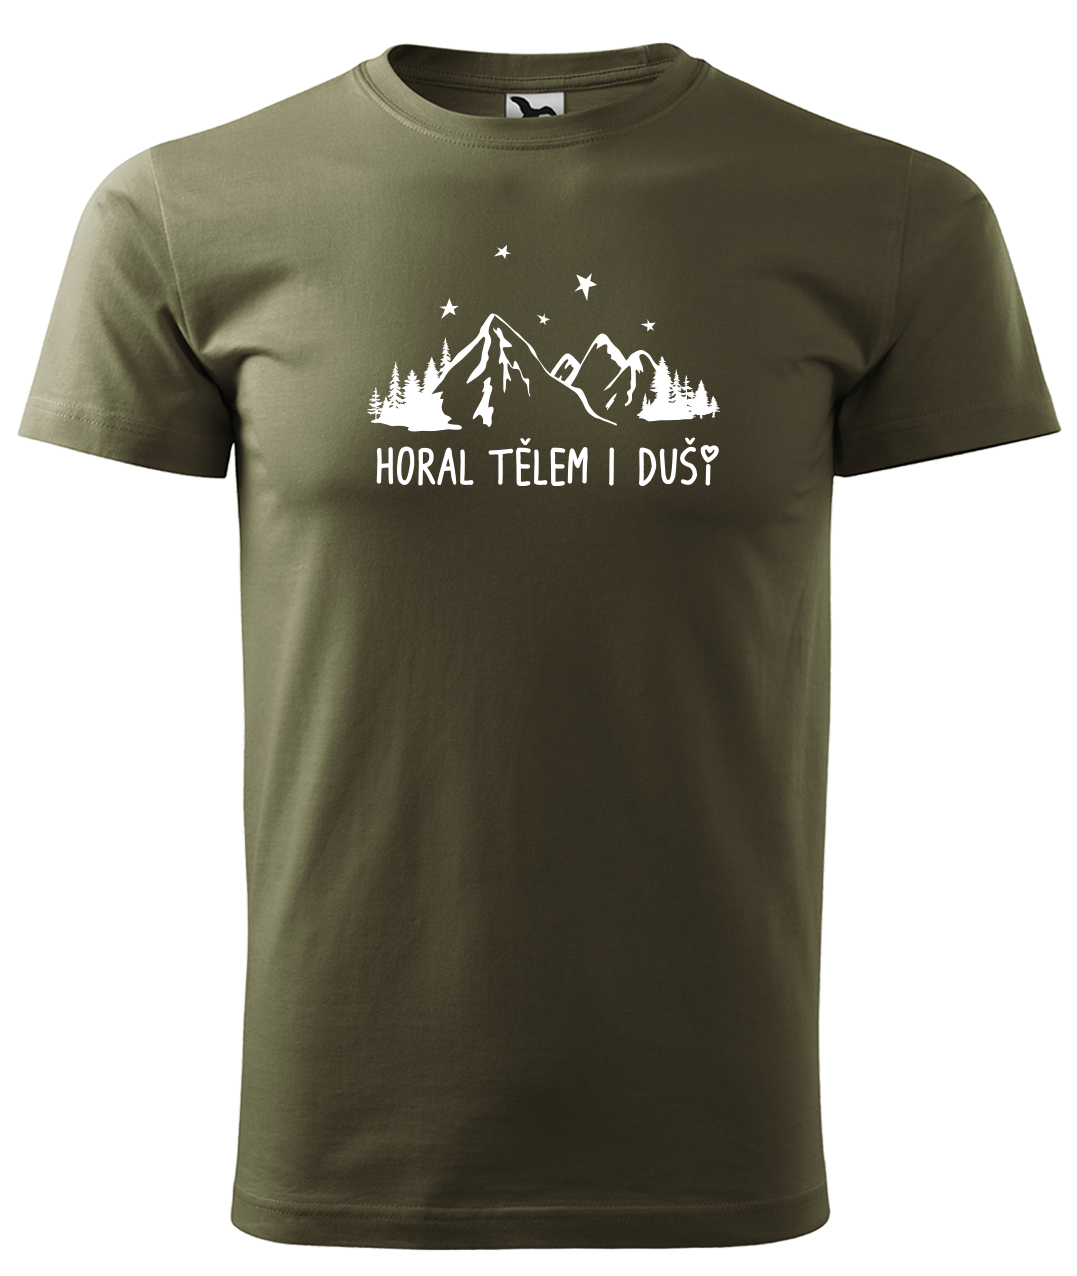 Dětské tričko na hory - Horal tělem i duší Velikost: 8 let / 134 cm, Barva: Military (69)